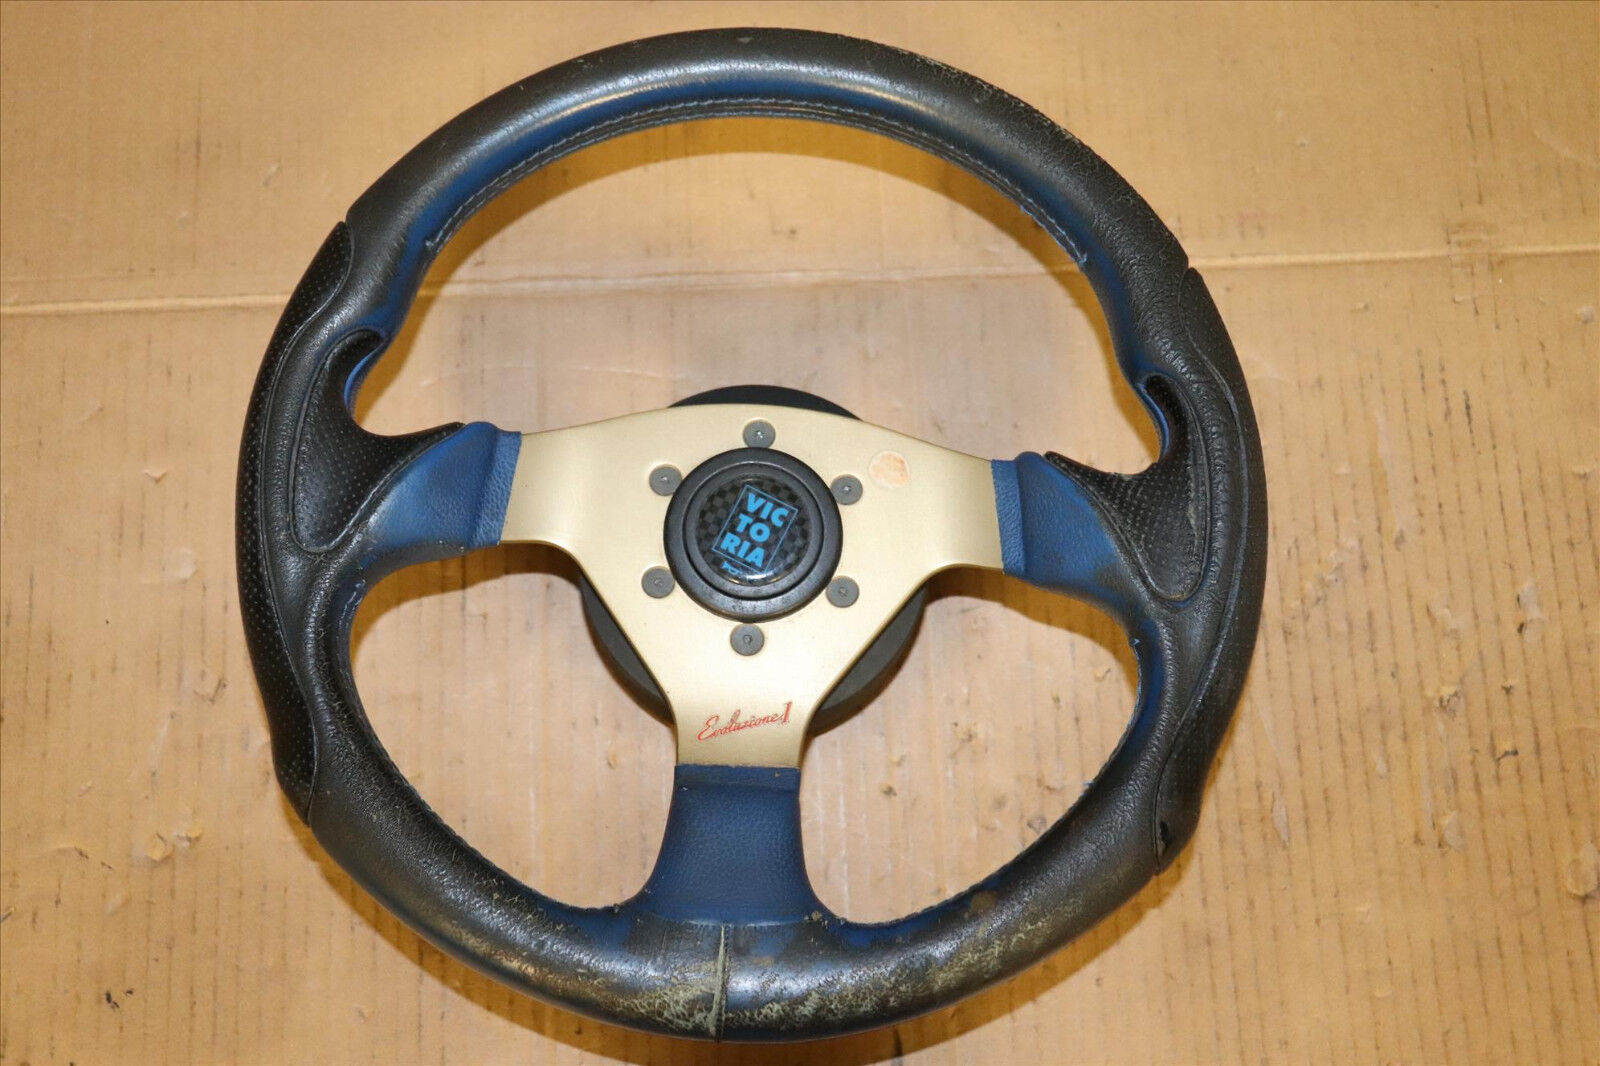 330MM Genuine Victoria Evoluzione 1 Steering Wheel 3 Spokes Blue Black Gold